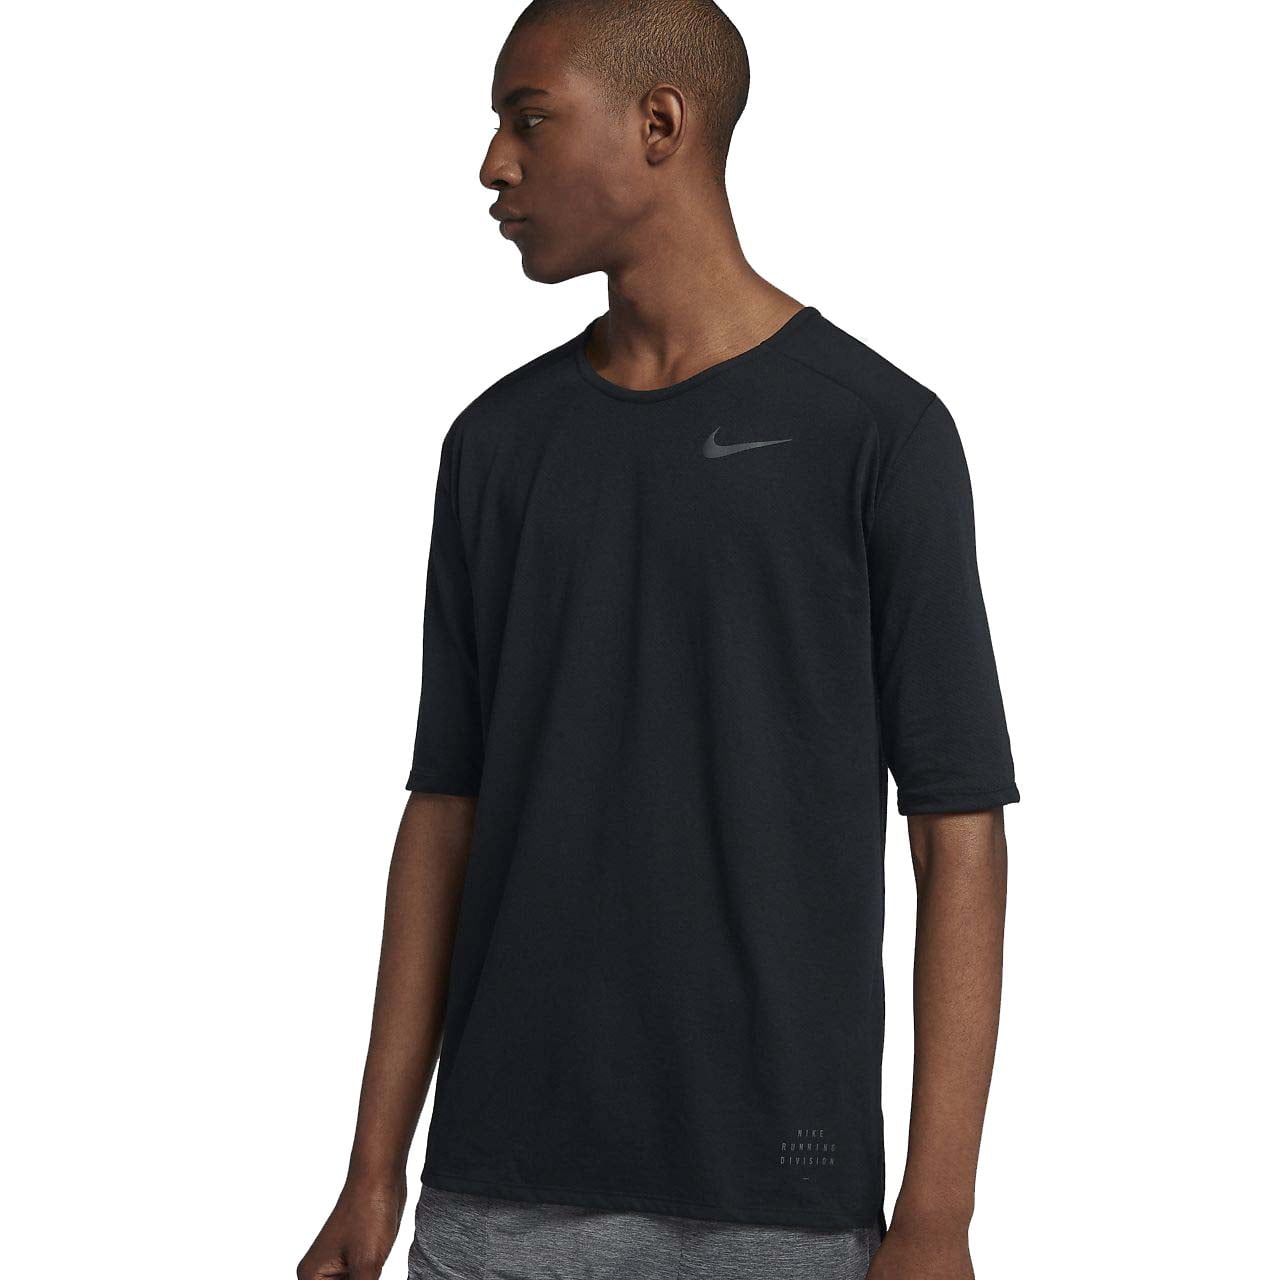 Prominente consenso malicioso Nike Men's Running Division Rise 365 Dri-Fit Top (Small, Black) -  Walmart.com